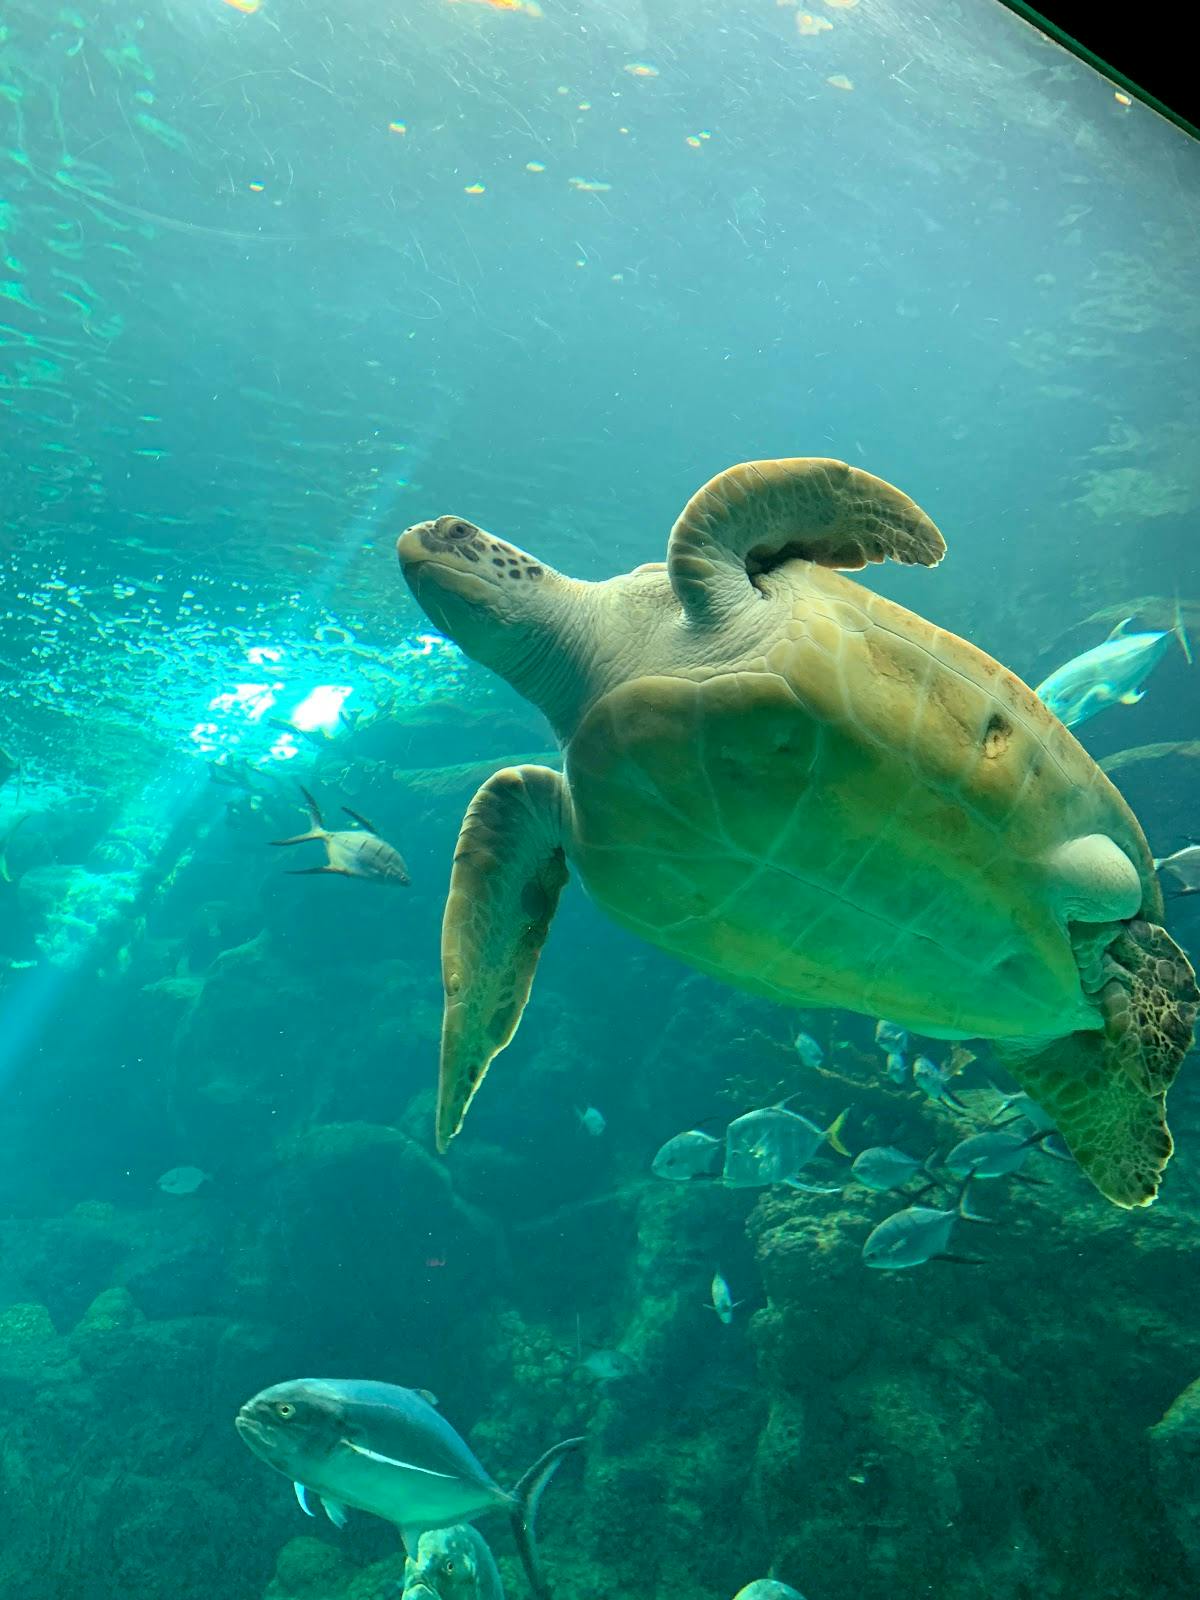 Image - The Florida Aquarium